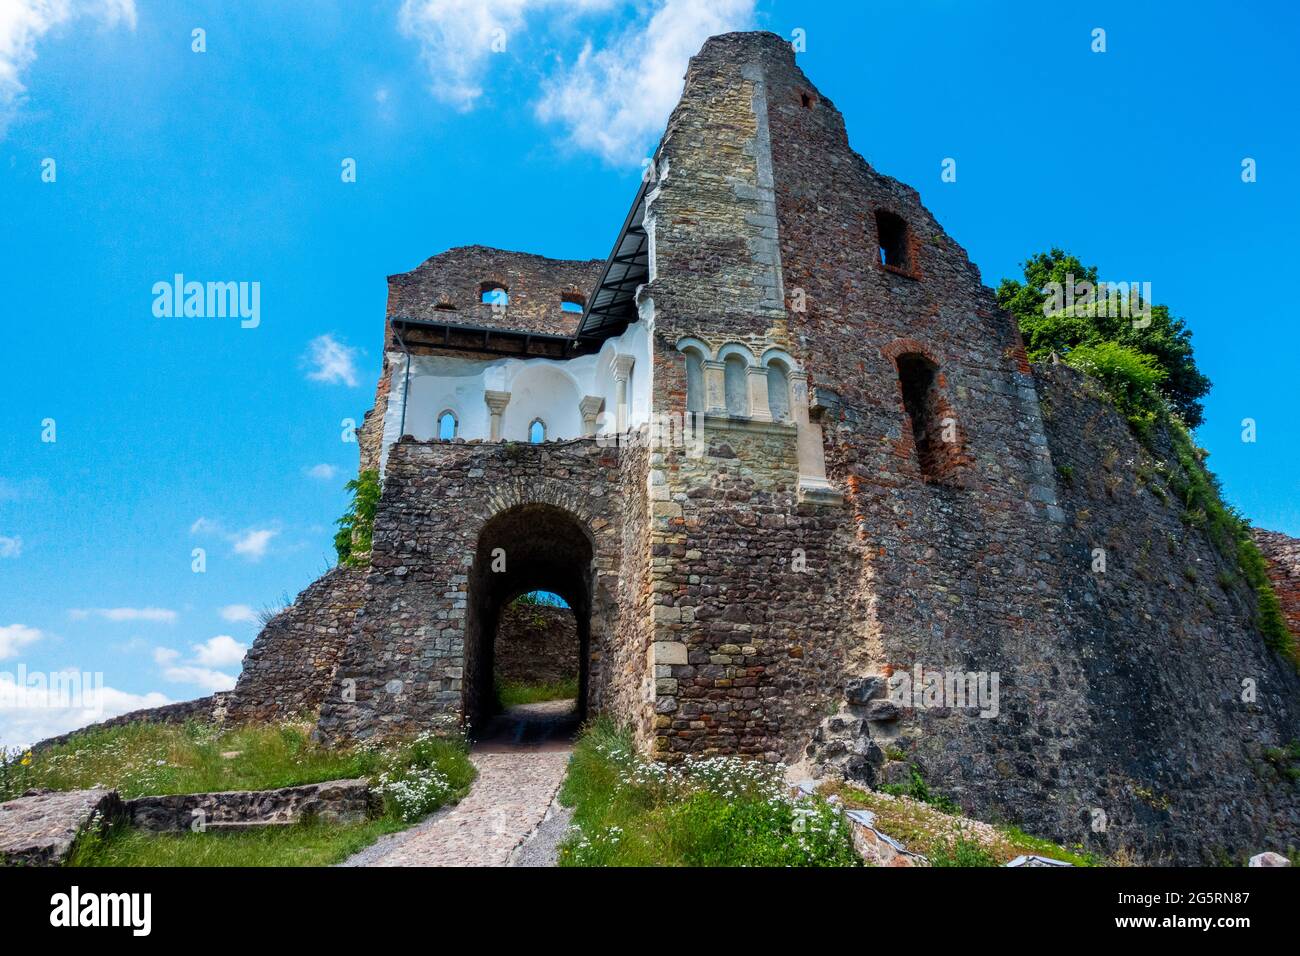 Burg Donaustauf Burgruine, Bezirk Landkreis Regensburg, Oberpfalz, Bayern, Deutschland, Europa Stock Photo